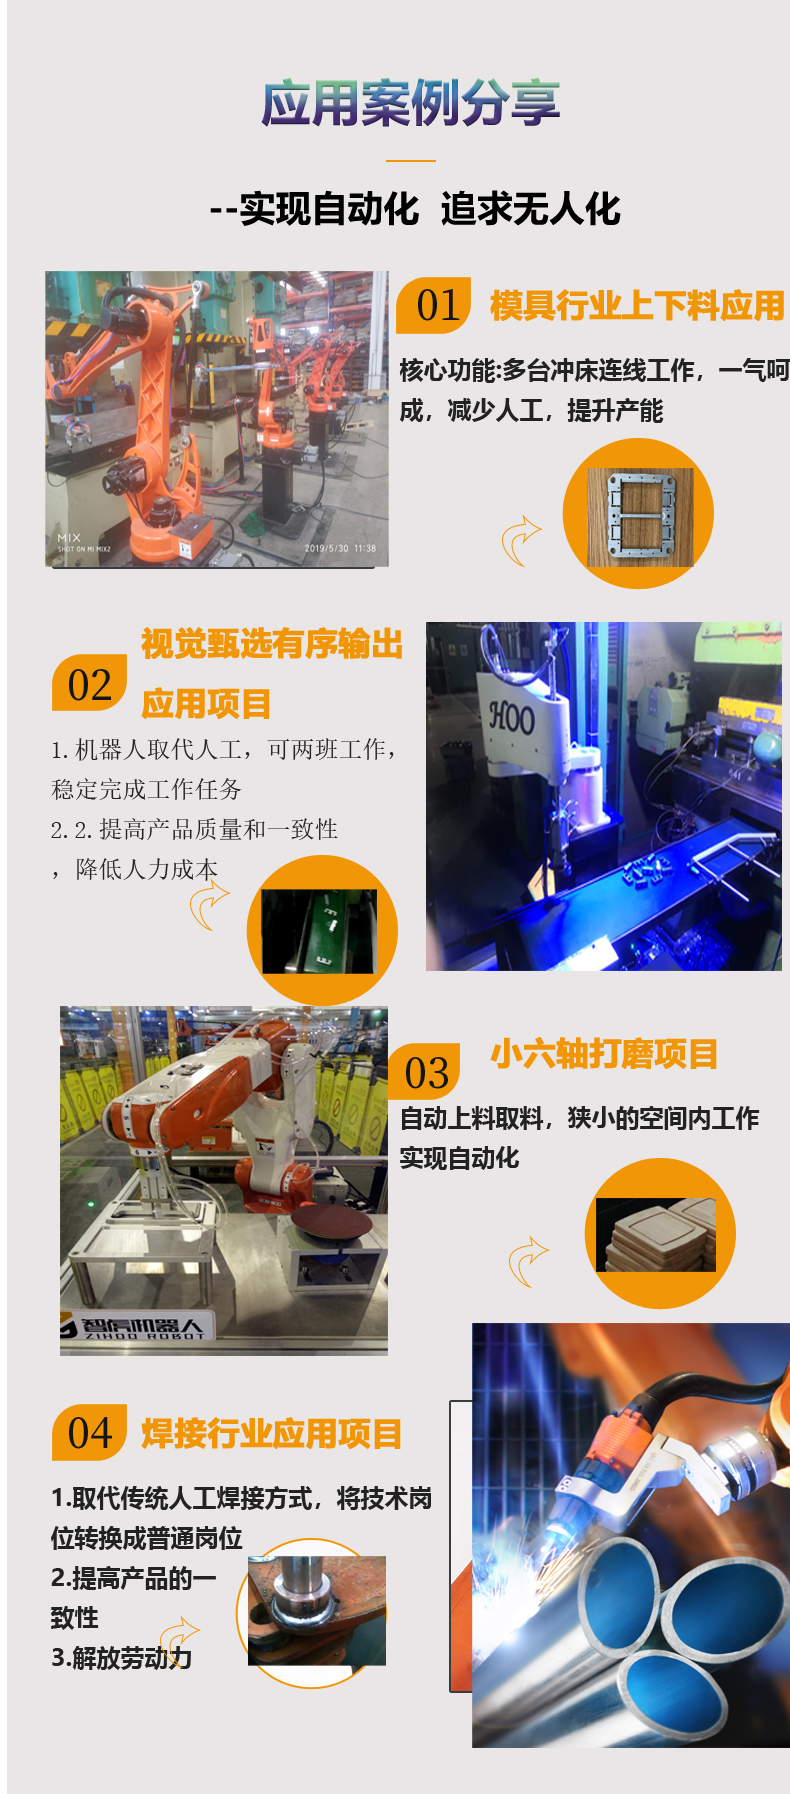 上海五轴冲压机器人种类